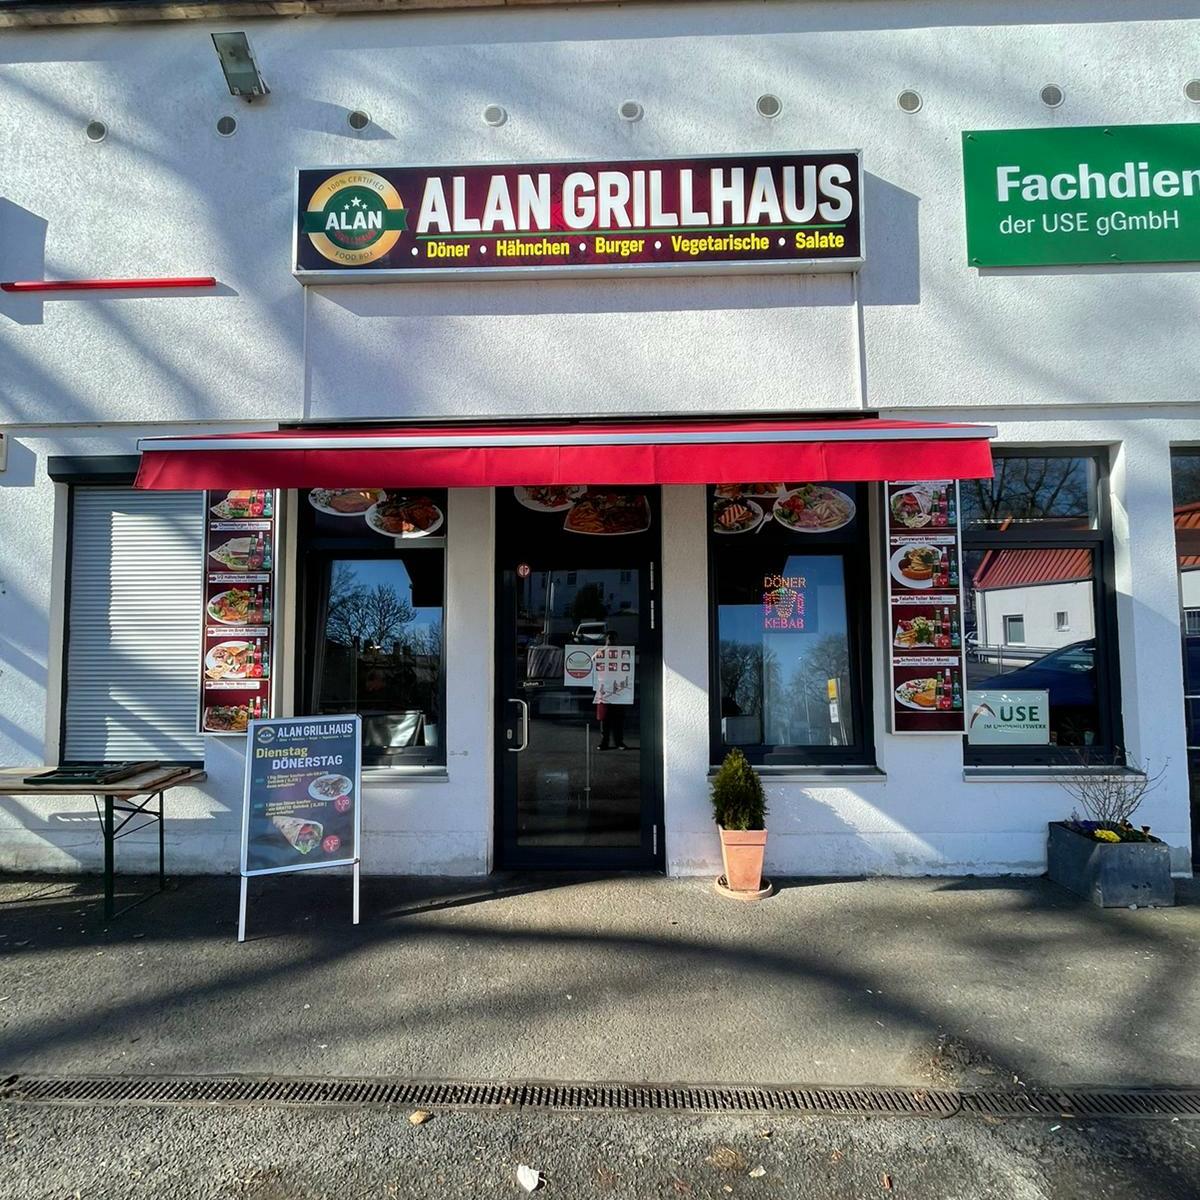 Restaurant "ALAN GRILLHAUS" in Berlin